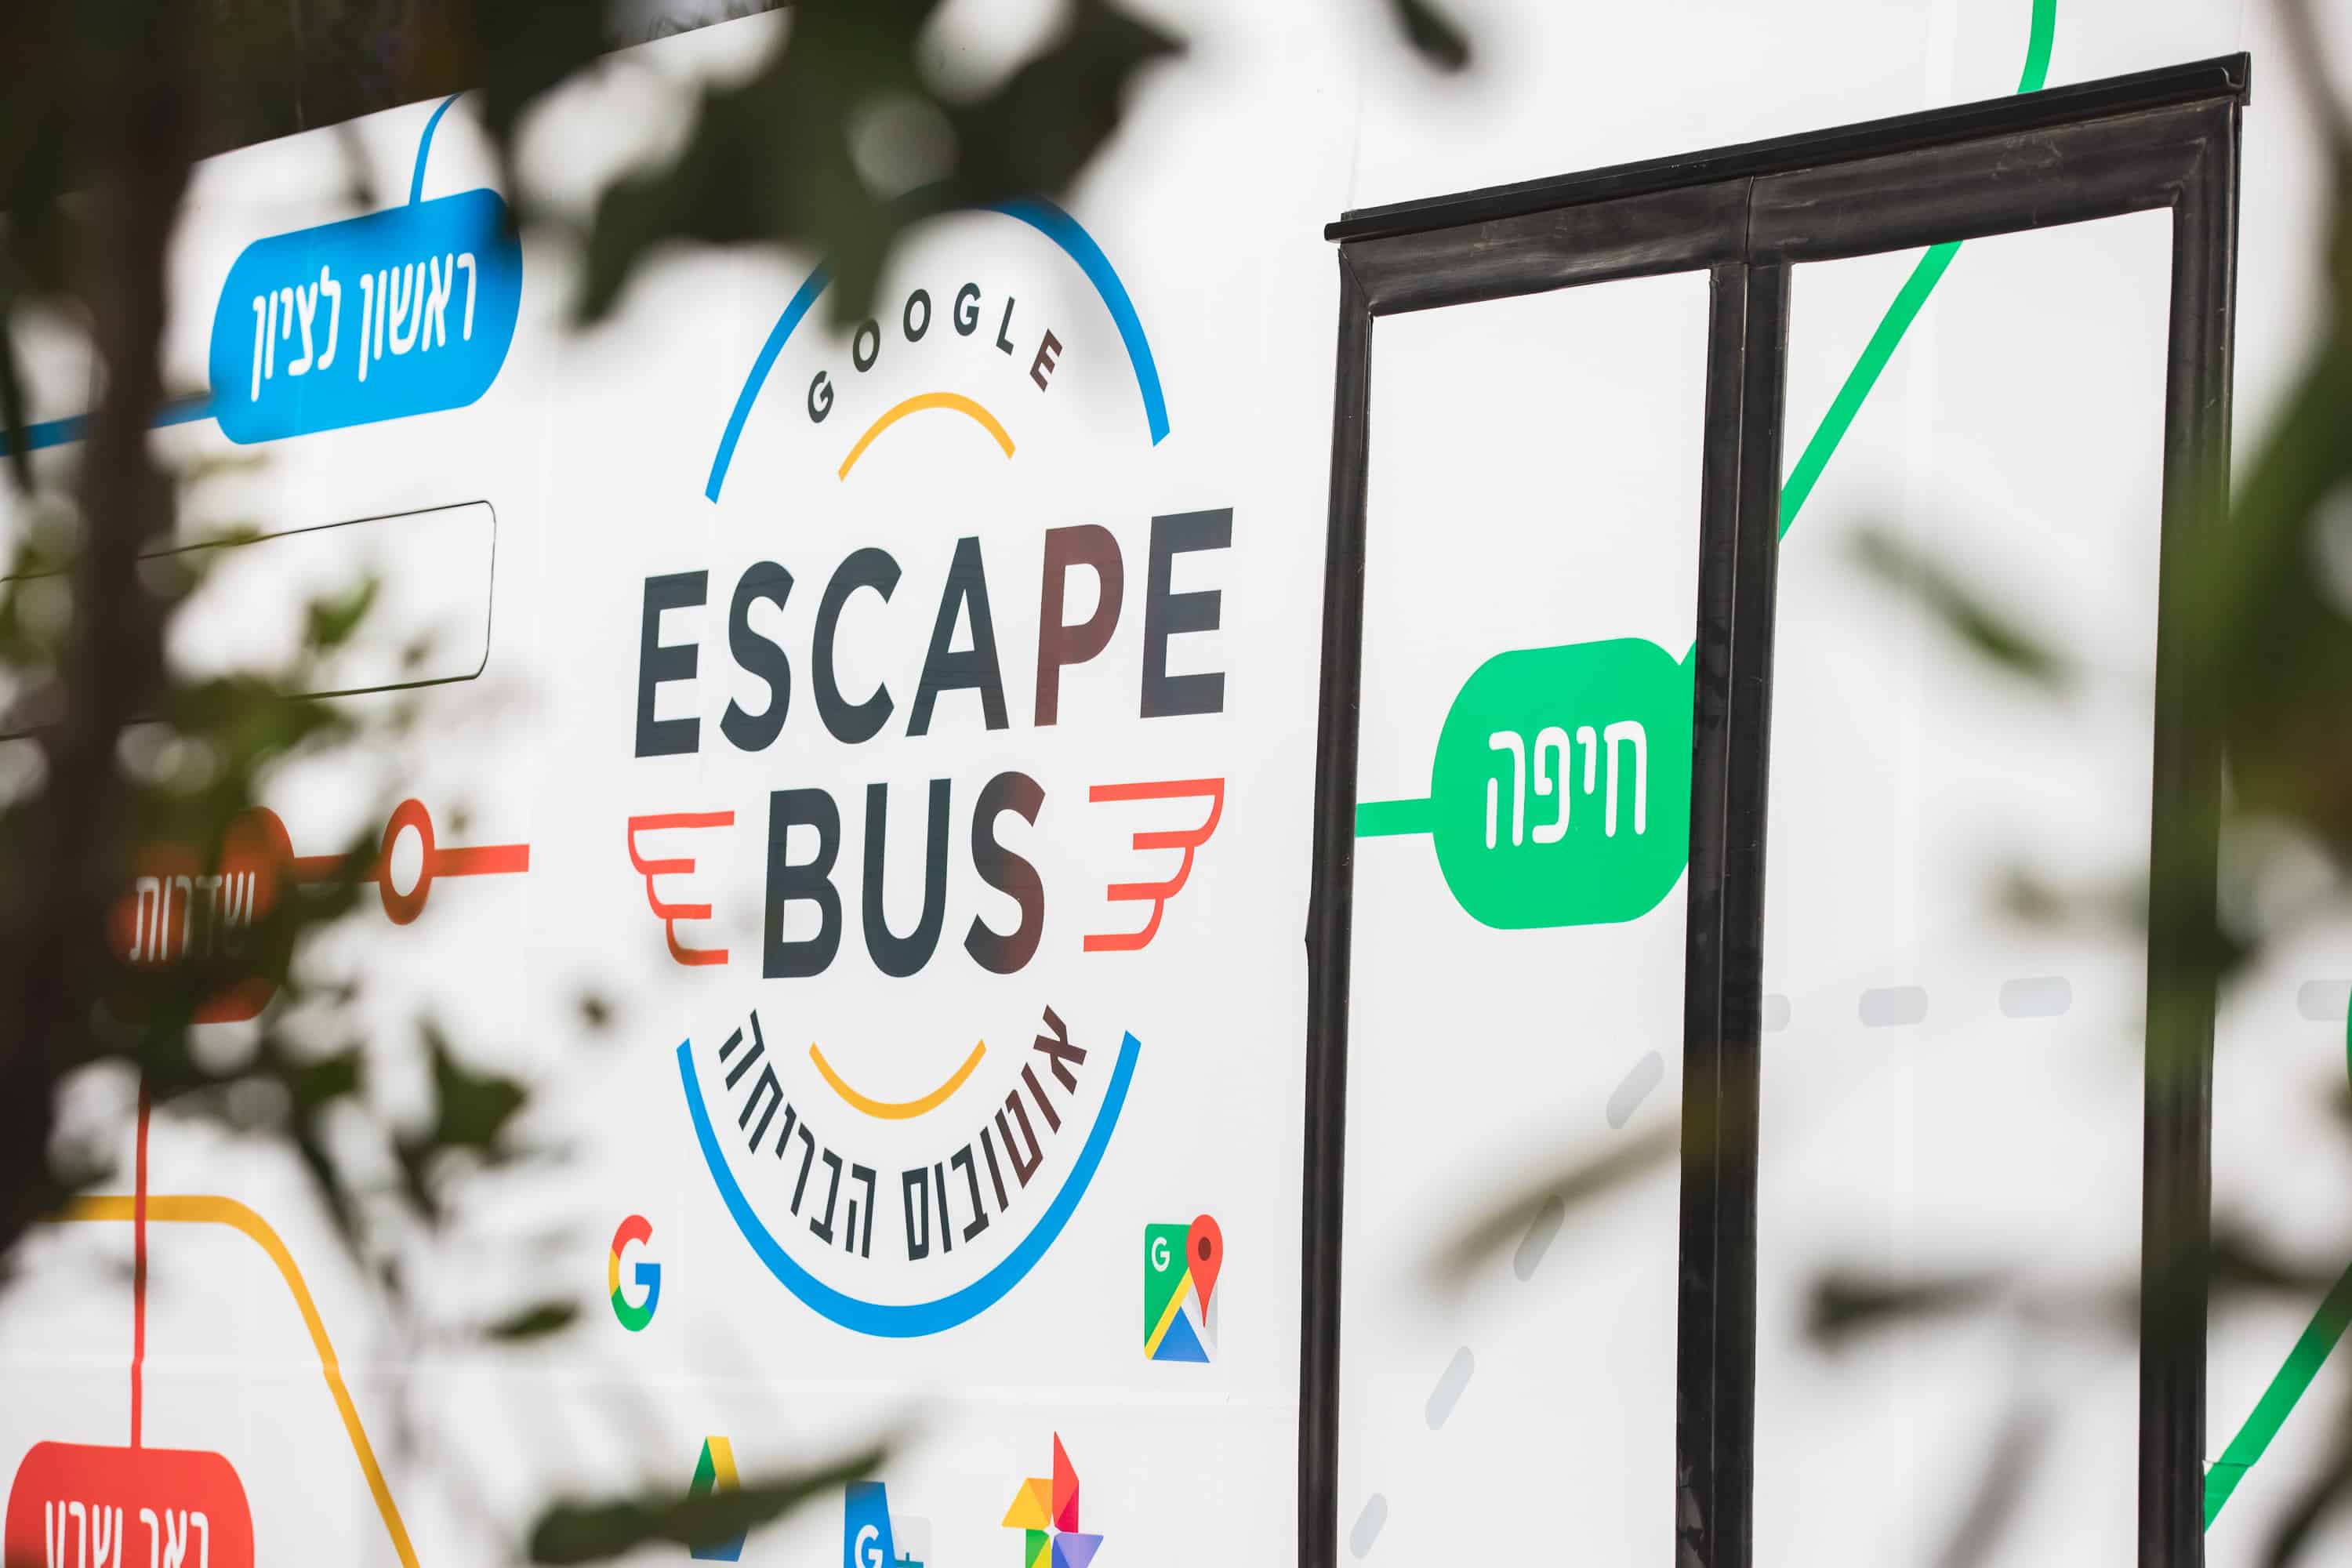 Google Escape Bus